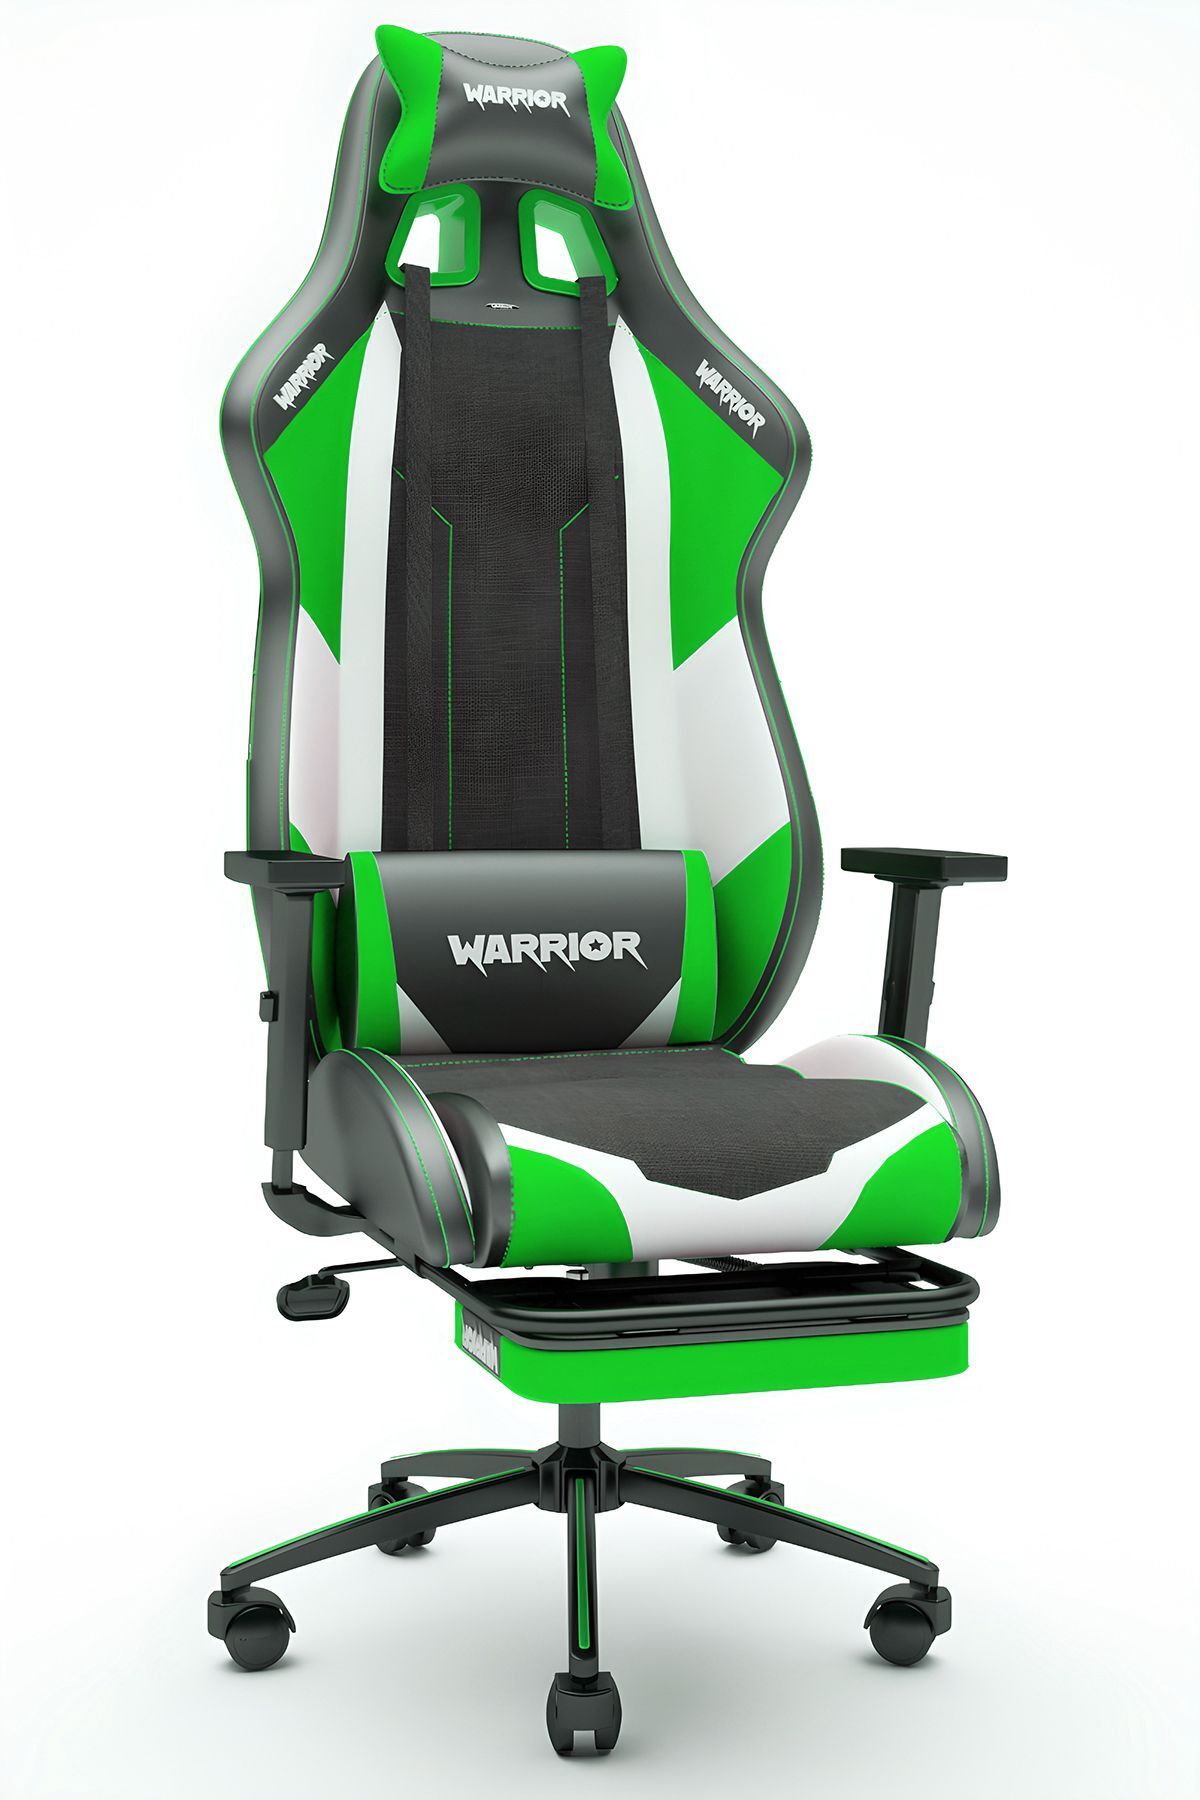 warrior Scorpion Oyuncu Koltuğu - Yeşil - Ayak Uzatmalı Bilgisayar Sandalyesi - 1575c0513